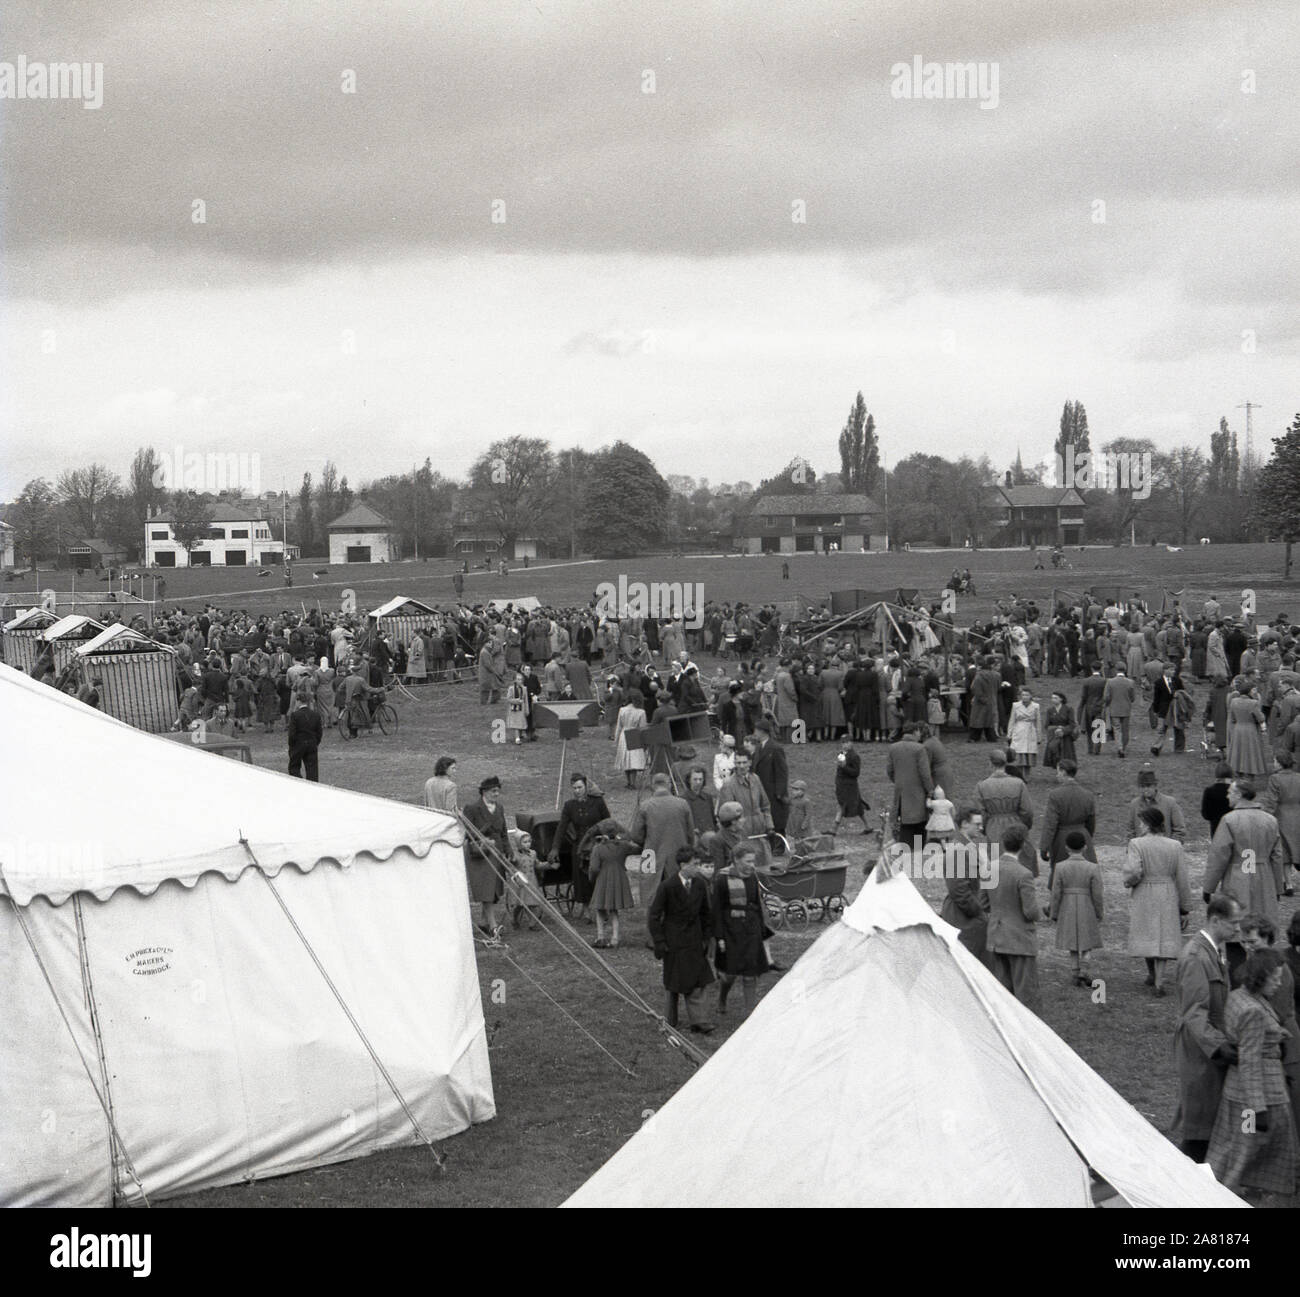 La historia de 1950, los visitantes de un verano fayre y outdoor tented exposición en los terrenos deportivos de la Universidad de Cambridge, Inglaterra, Reino Unido. Foto de stock